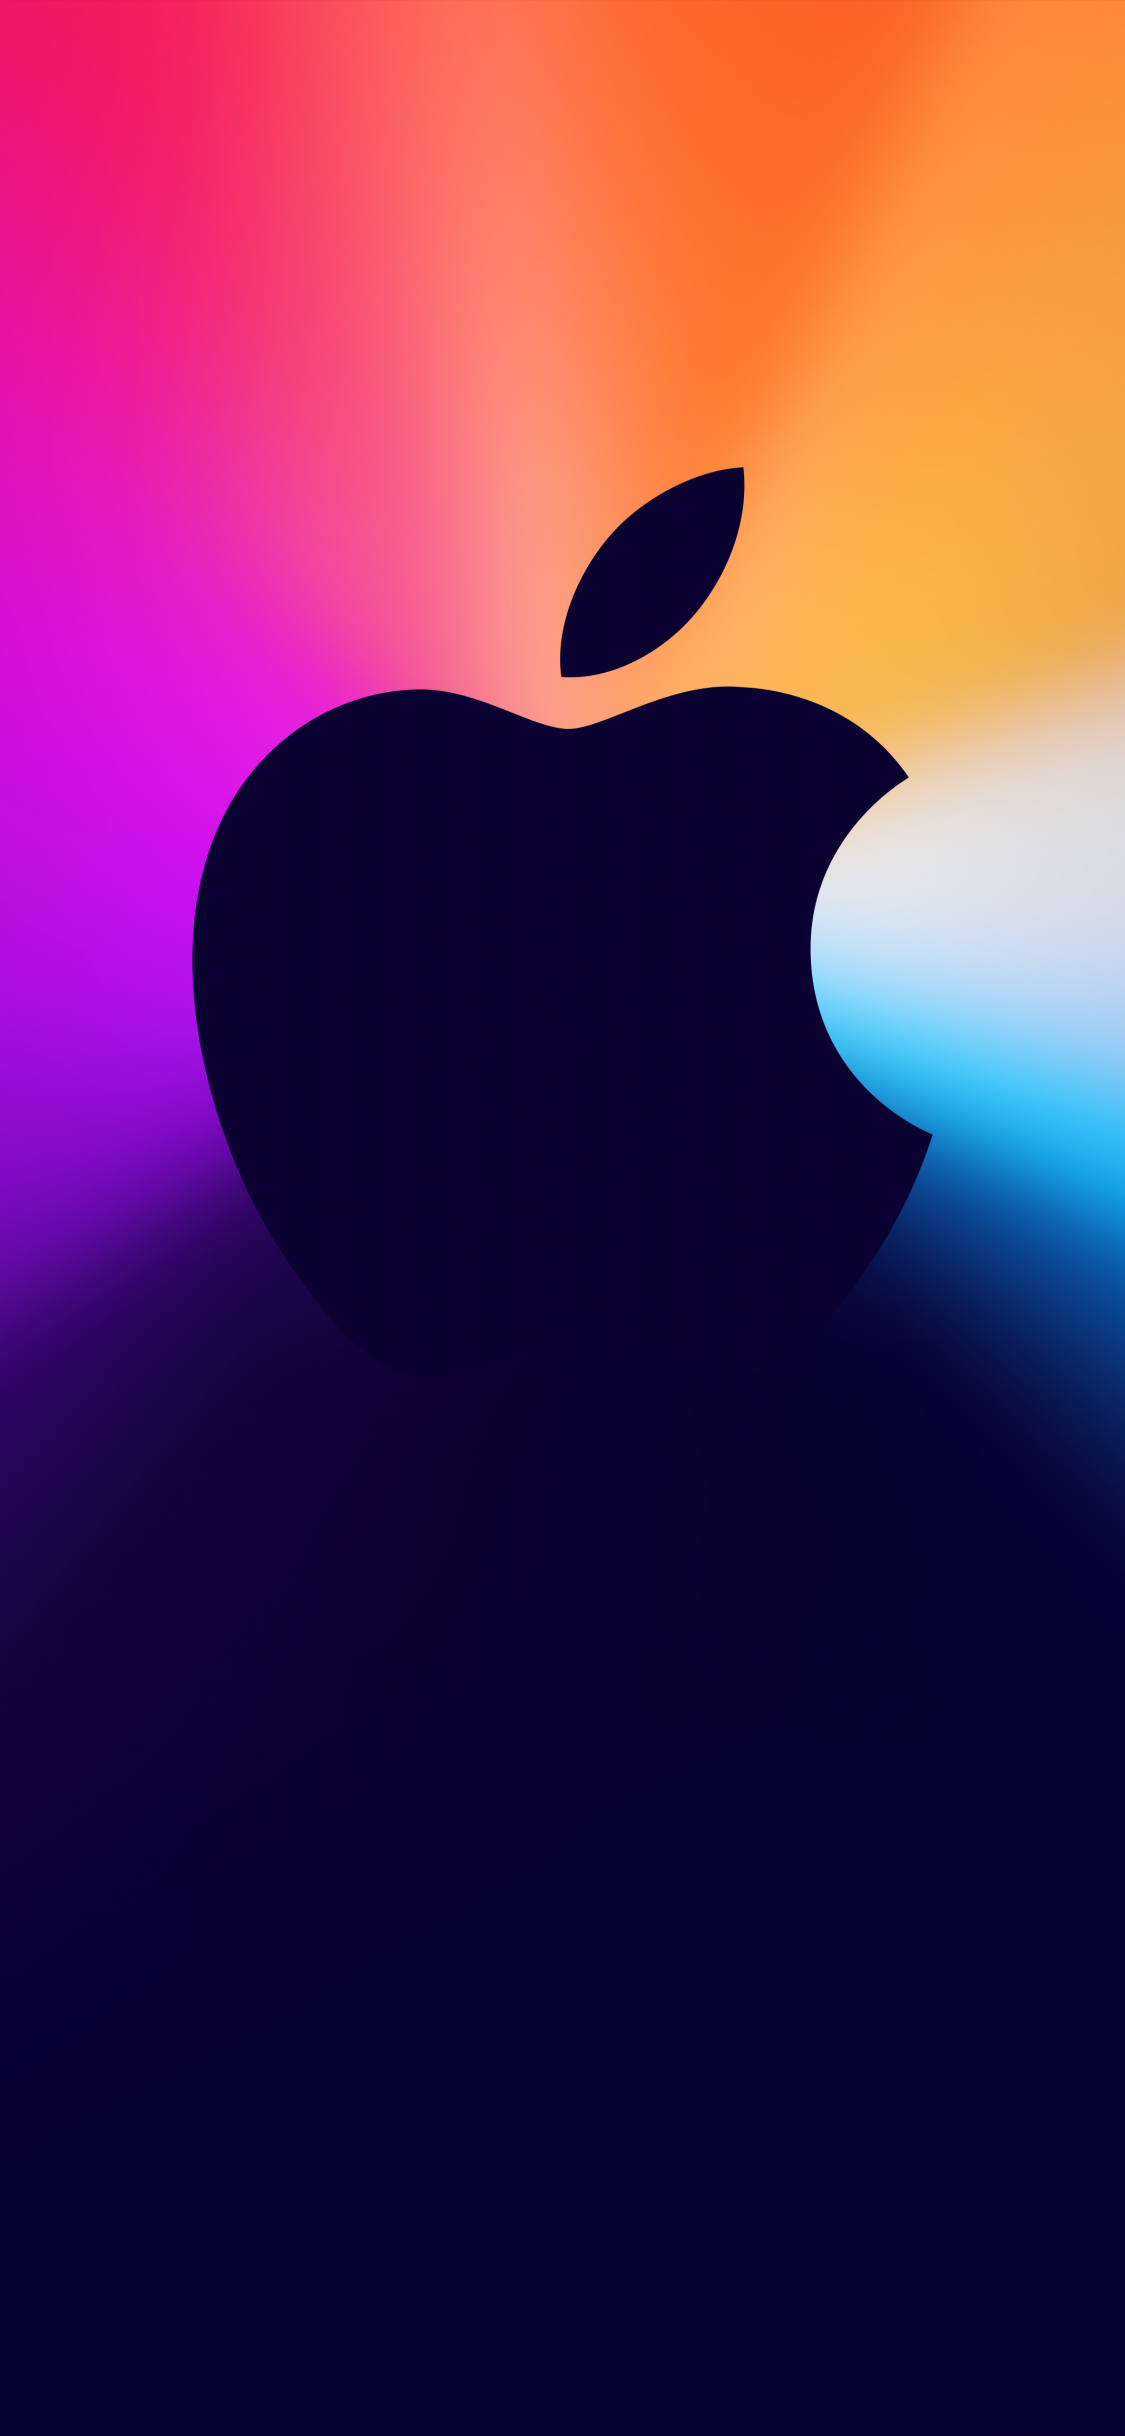 Logo của Apple là biểu tượng của sự thịnh vượng, sự thịnh vượng và sự sáng tạo. Nếu bạn yêu thích công nghệ và đam mê thương hiệu, hãy xem chi tiết hình ảnh này để đón nhận cảm hứng mới và trang trí cho chiếc máy tính của mình một cách độc đáo. 